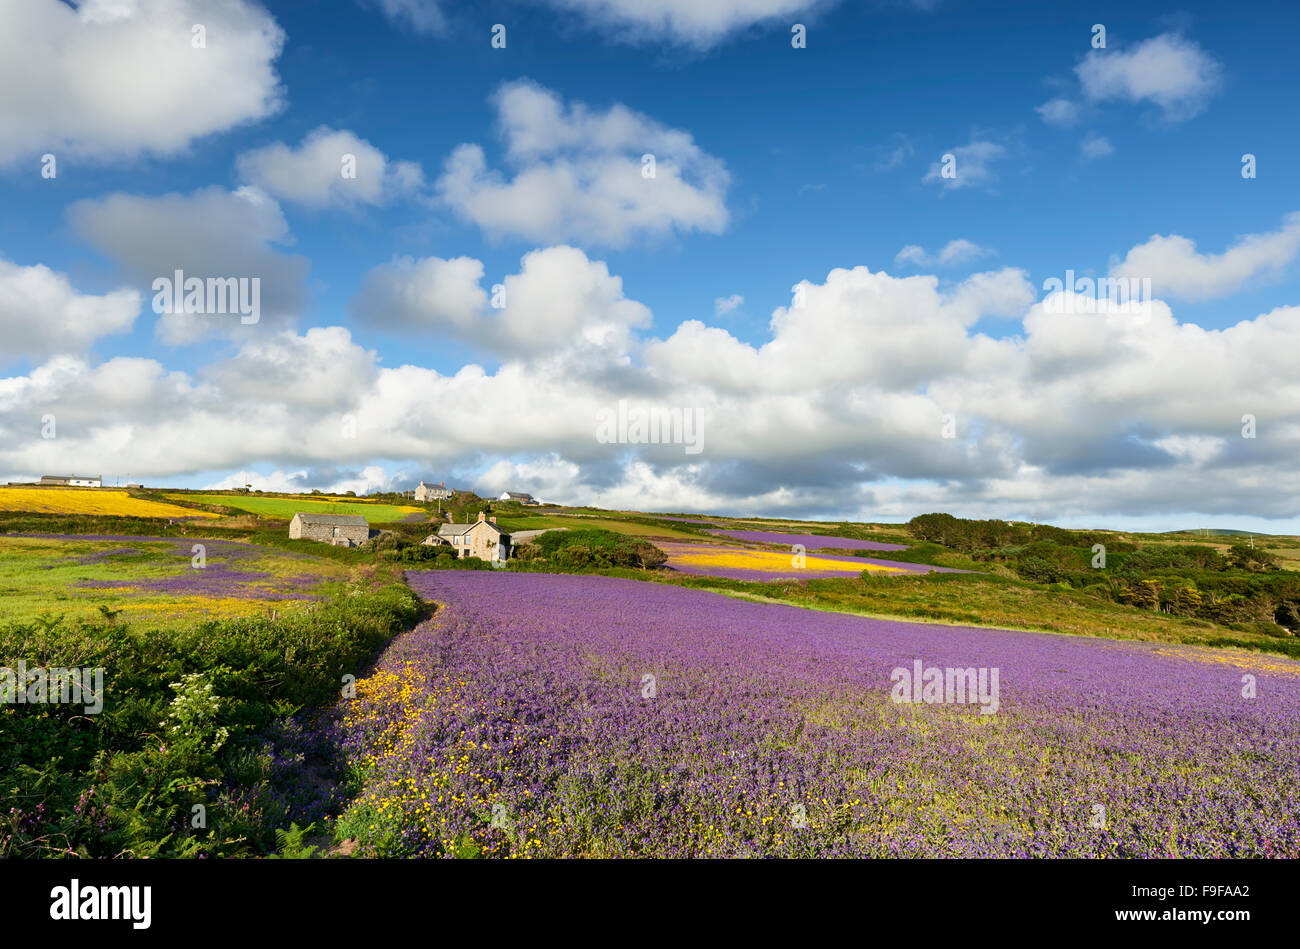 Acker Ackerland bei Boscregan, West Cornwall. Lila Viper's Bugloss und Mais Ringelblumen für Naturschutz gewachsen. Stockfoto